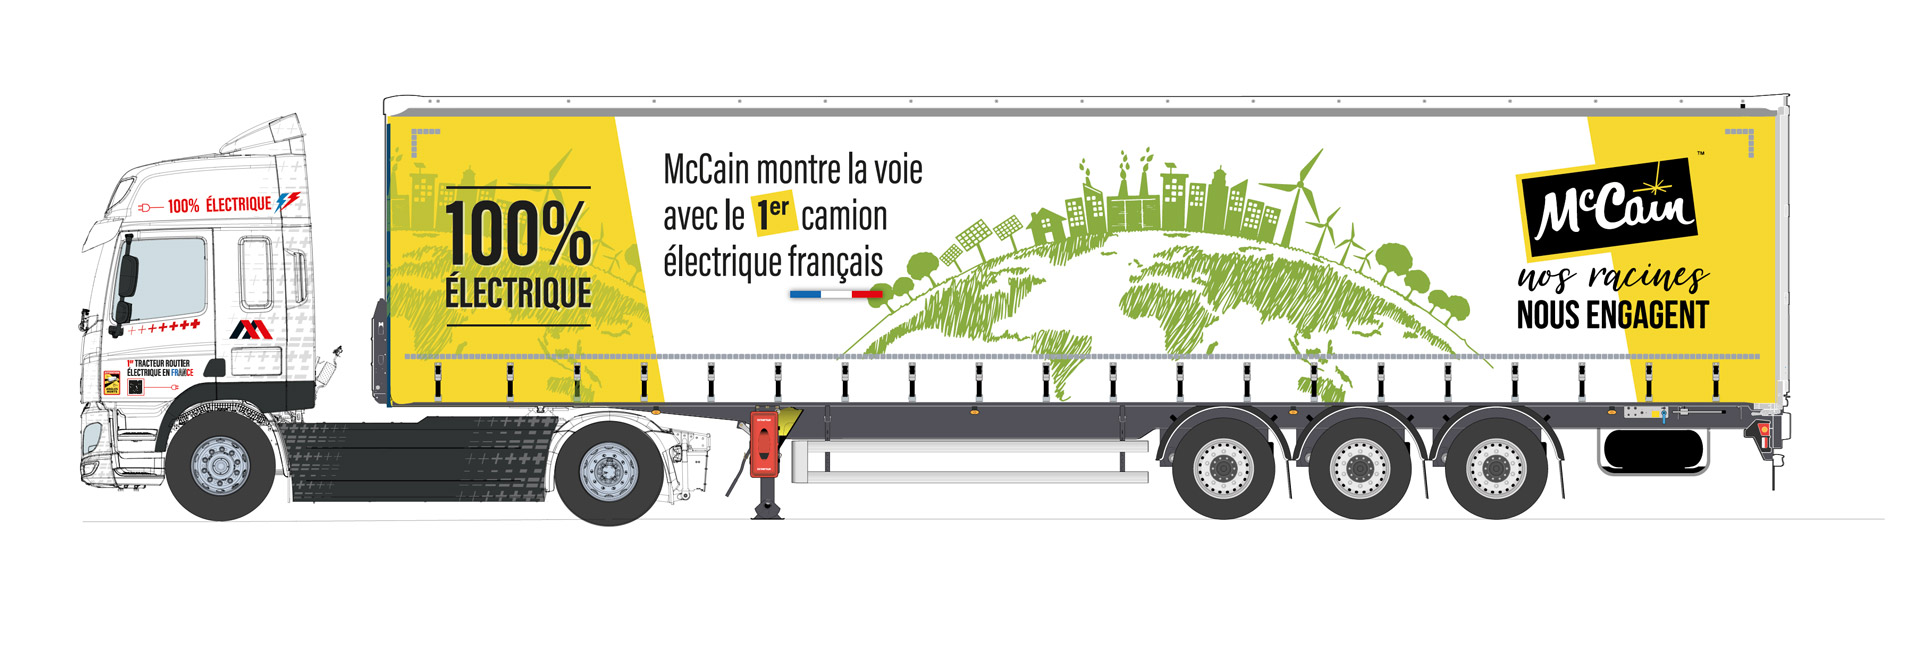 tracteur électrique mc Cain avec le Groupe-mauffrey-notre-histoire-Camion-remorque-mc-cain-camion-electrique